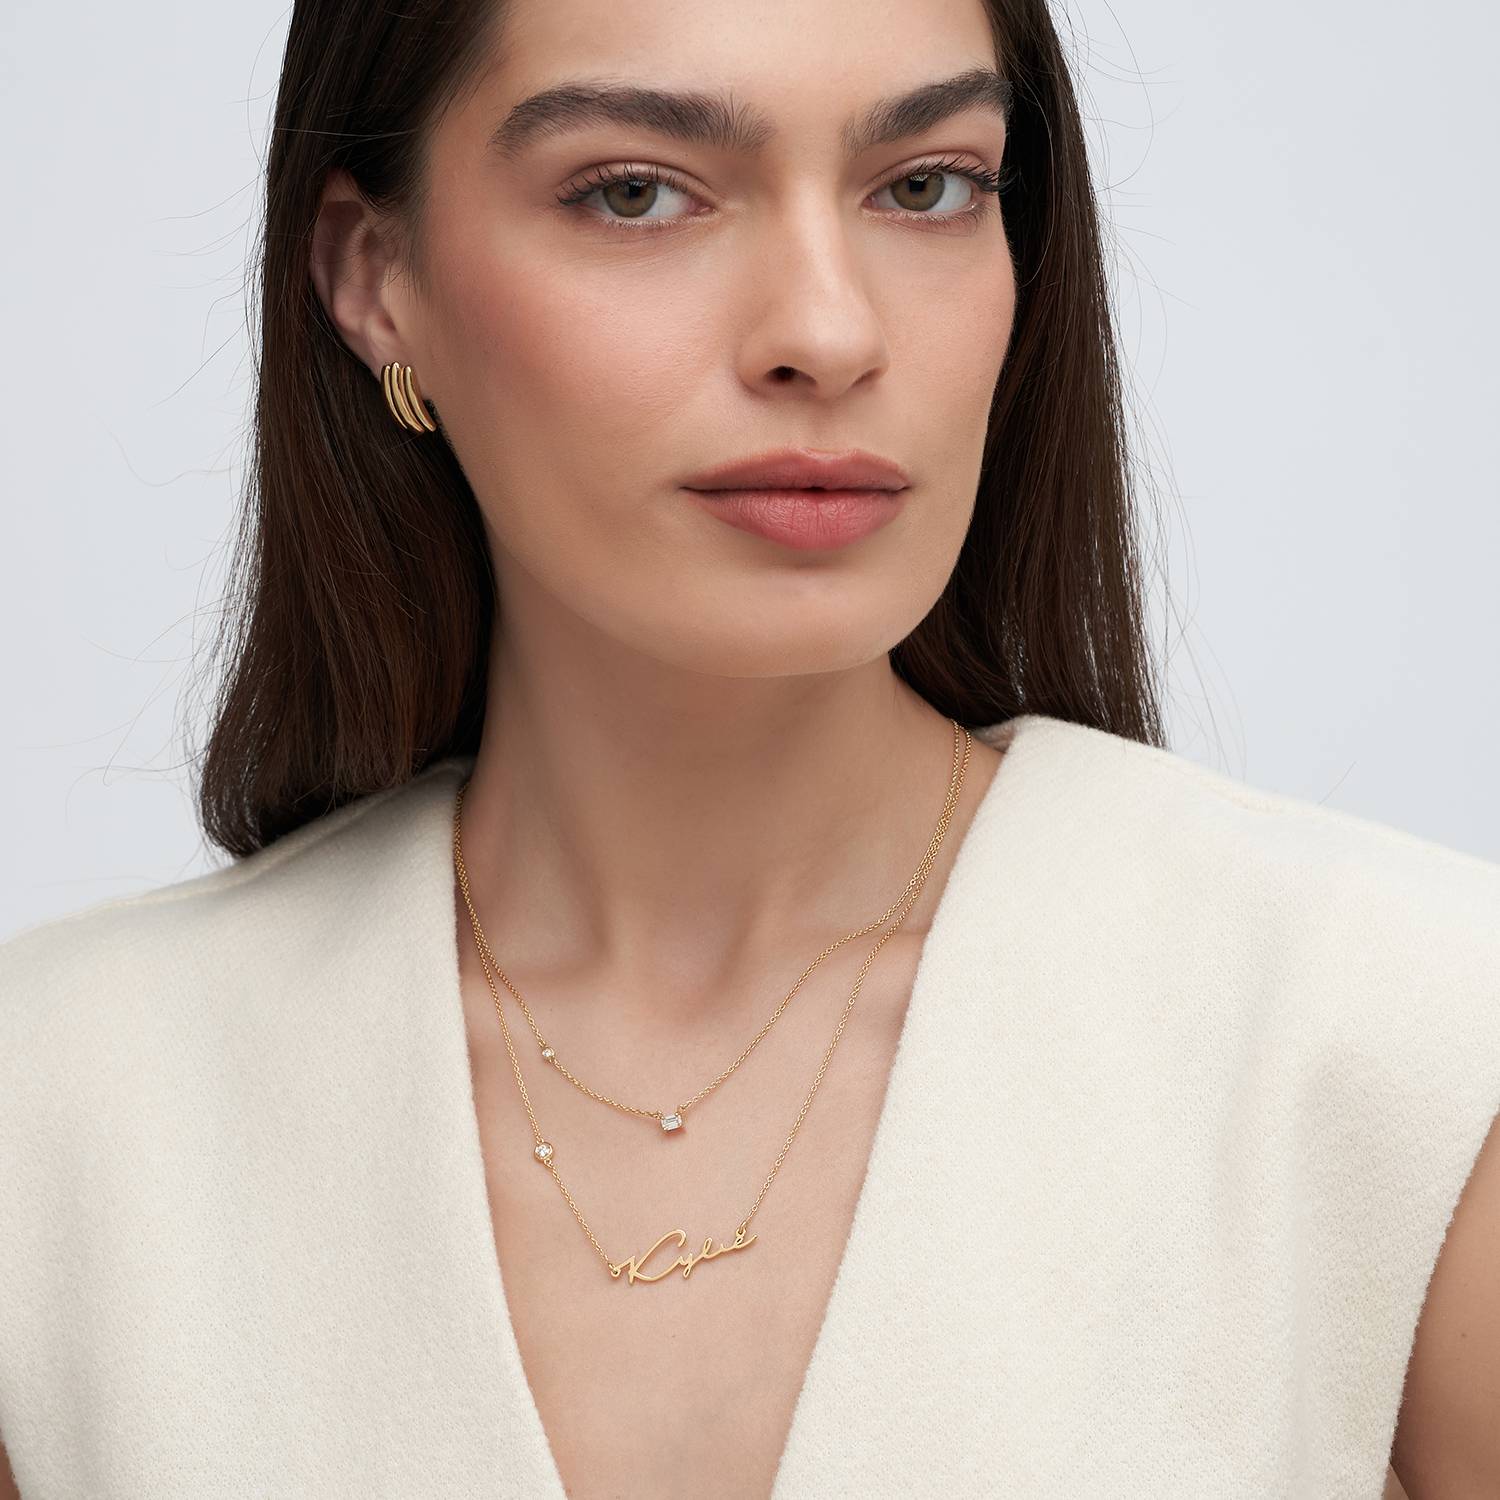 Princess Multi-Diamond Necklace with 0.3 ct Custom Diamond- Gold Vermeil-1 product photo